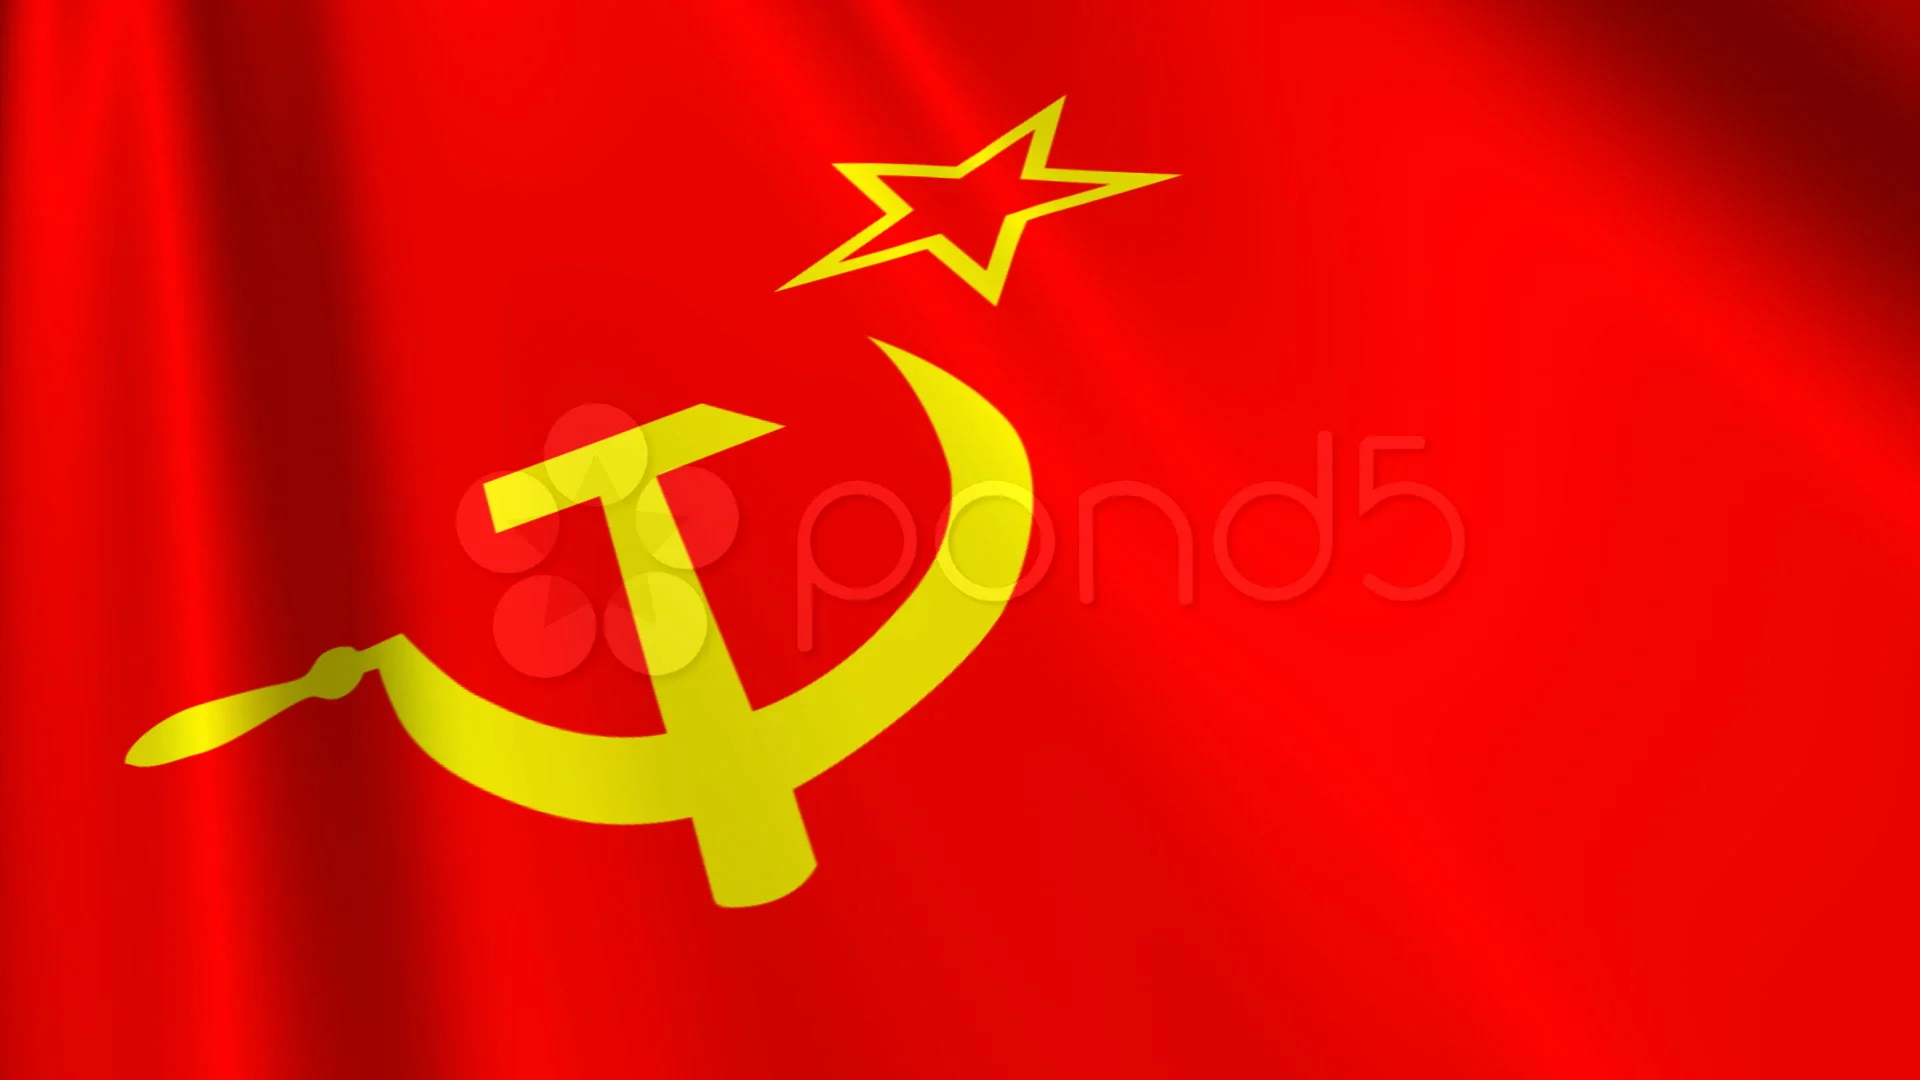 Живые обои флаги. Флаг советского Союза. Флаг советского Союза СССР. Красный флаг советского Союза. Красный флаг серп и молот.